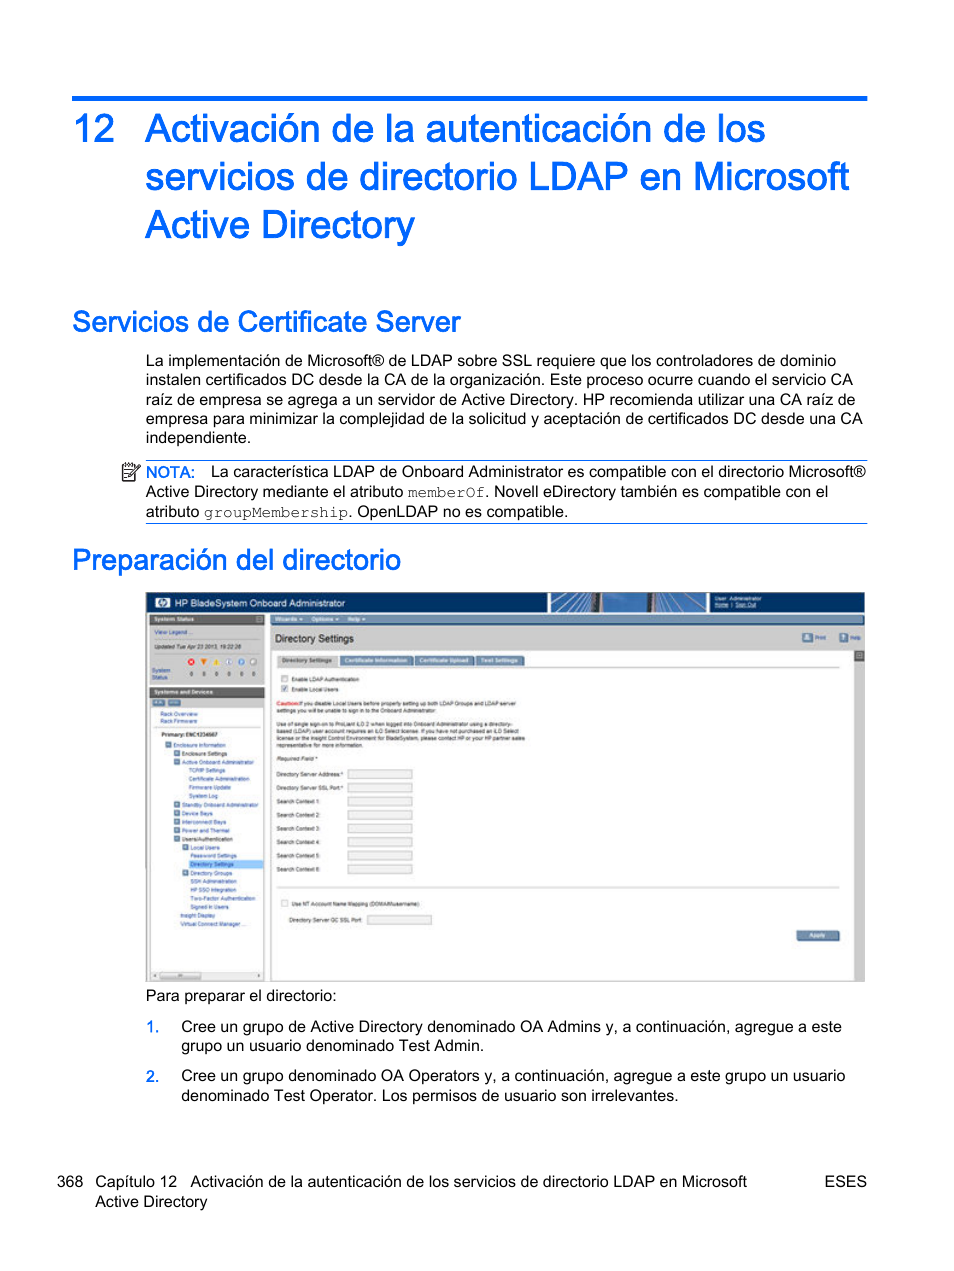 Servicios de certificate server, Preparación del directorio | HP Onboard Administrator Manual del usuario | Página 377 / 404